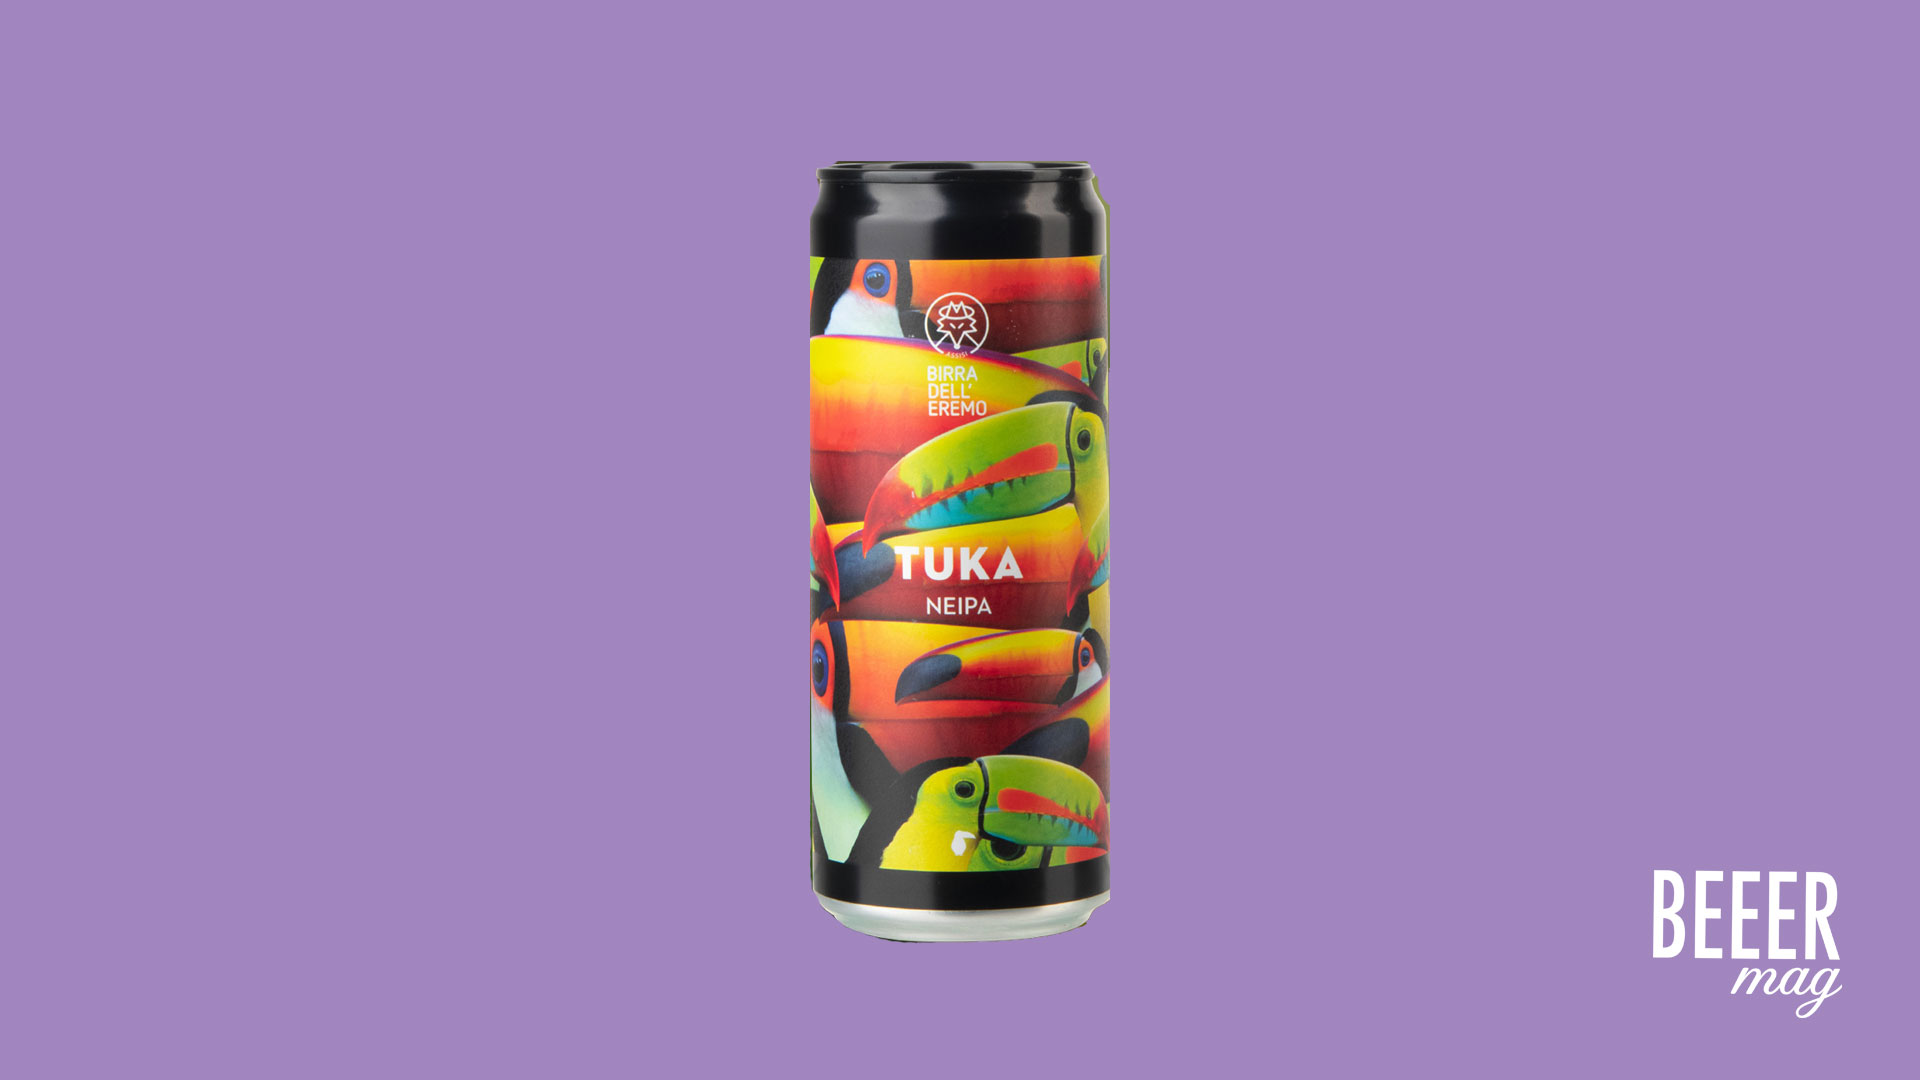 Tuka - Birra dell'Eremo